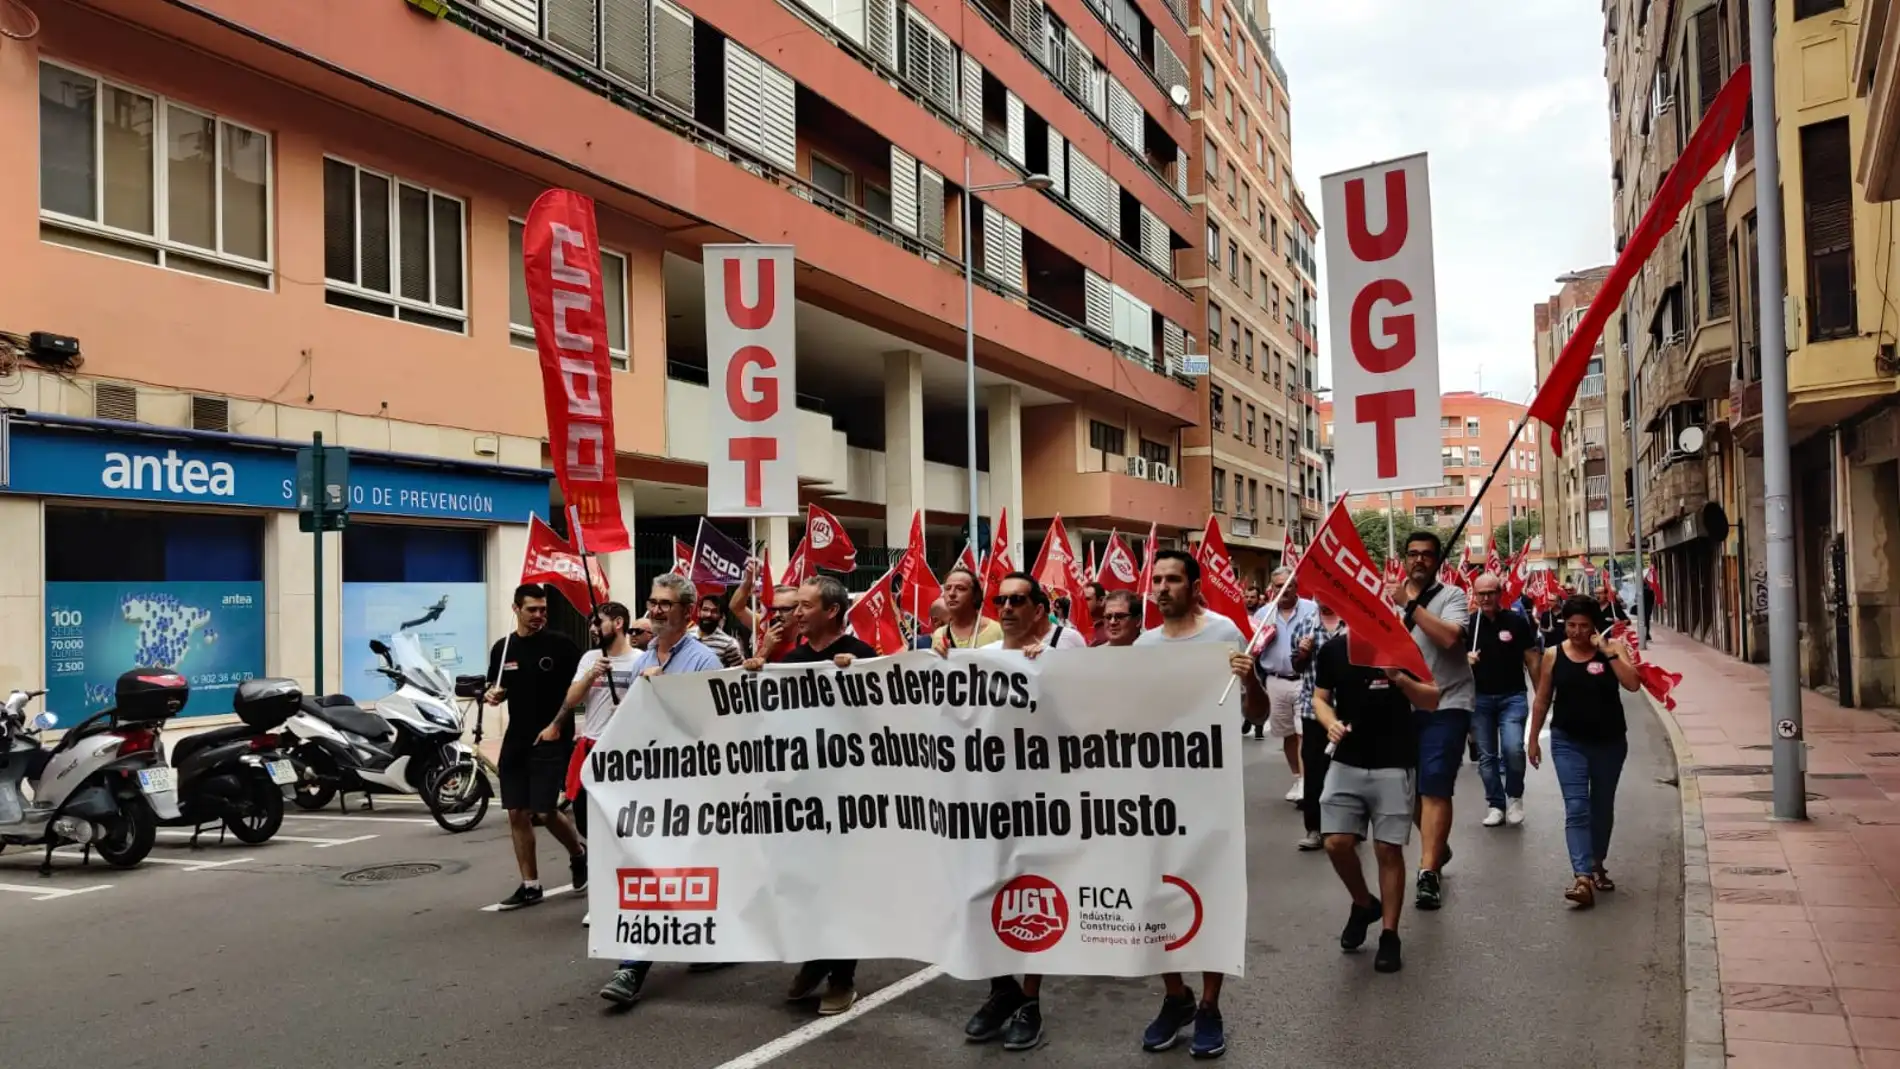 UGT y CCOO protestan ante el "bloqueo" del convenio del azulejo